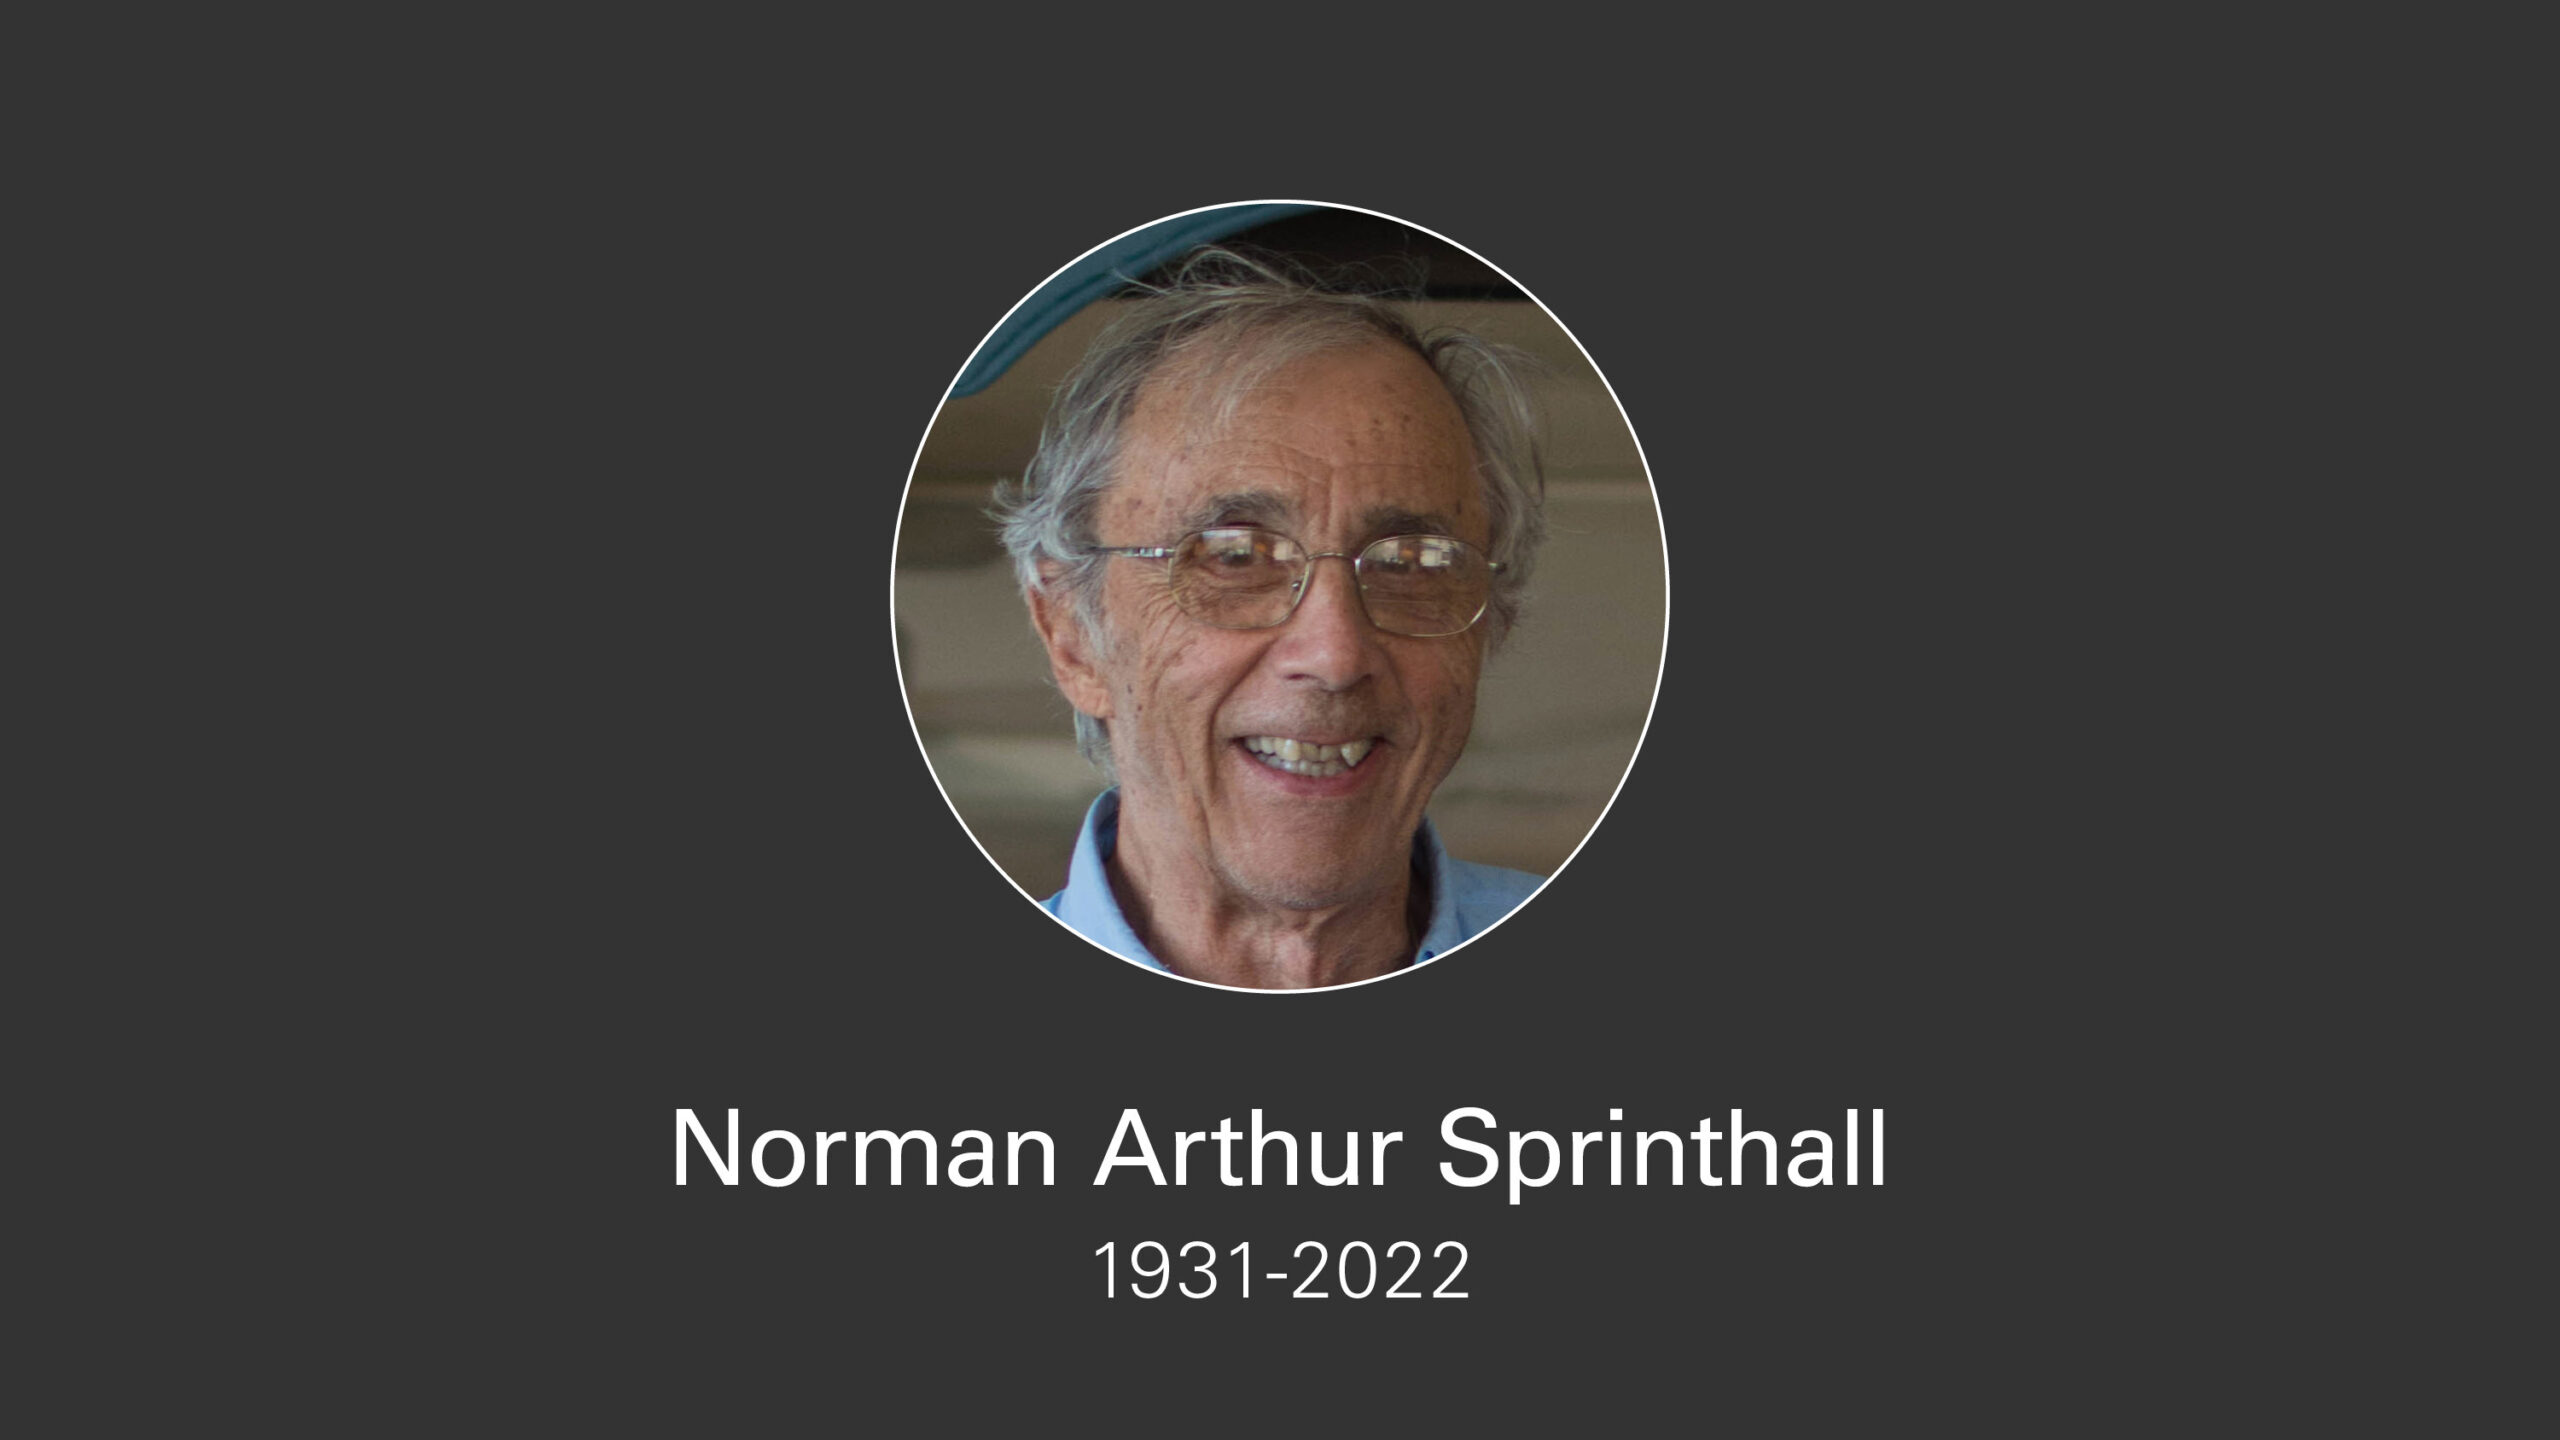 Norman Arthur Sprinthall